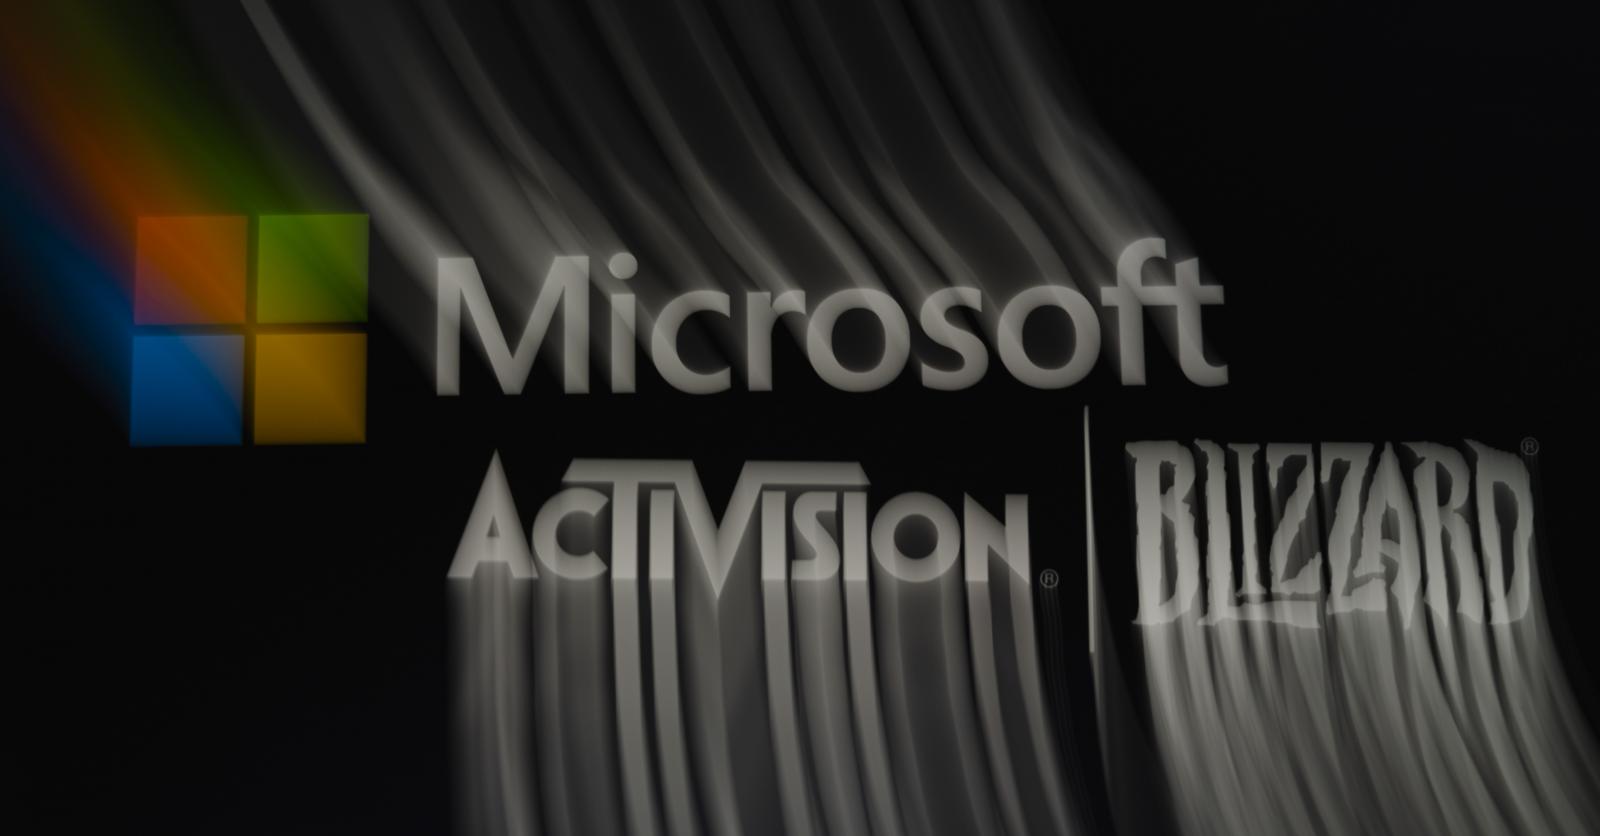 Microsoft telah melewatkan tenggat waktu untuk kesepakatan Activision Blizzard senilai $69 miliar